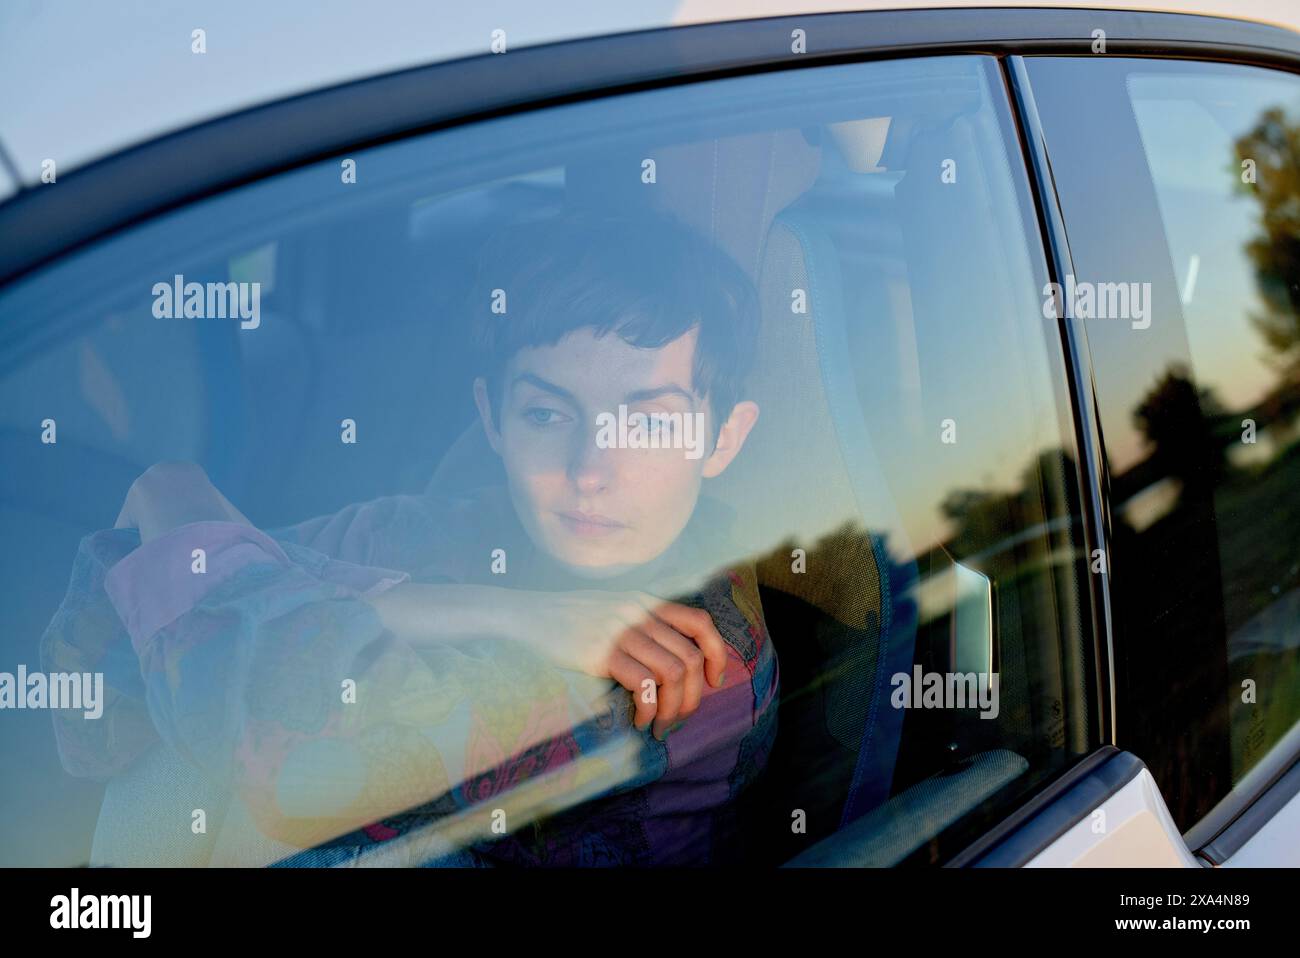 Una giovane donna guarda fuori dal finestrino di un'auto, con un'espressione riflessiva. Il sole tramonta proiettando un caldo bagliore sulla scena. Foto Stock